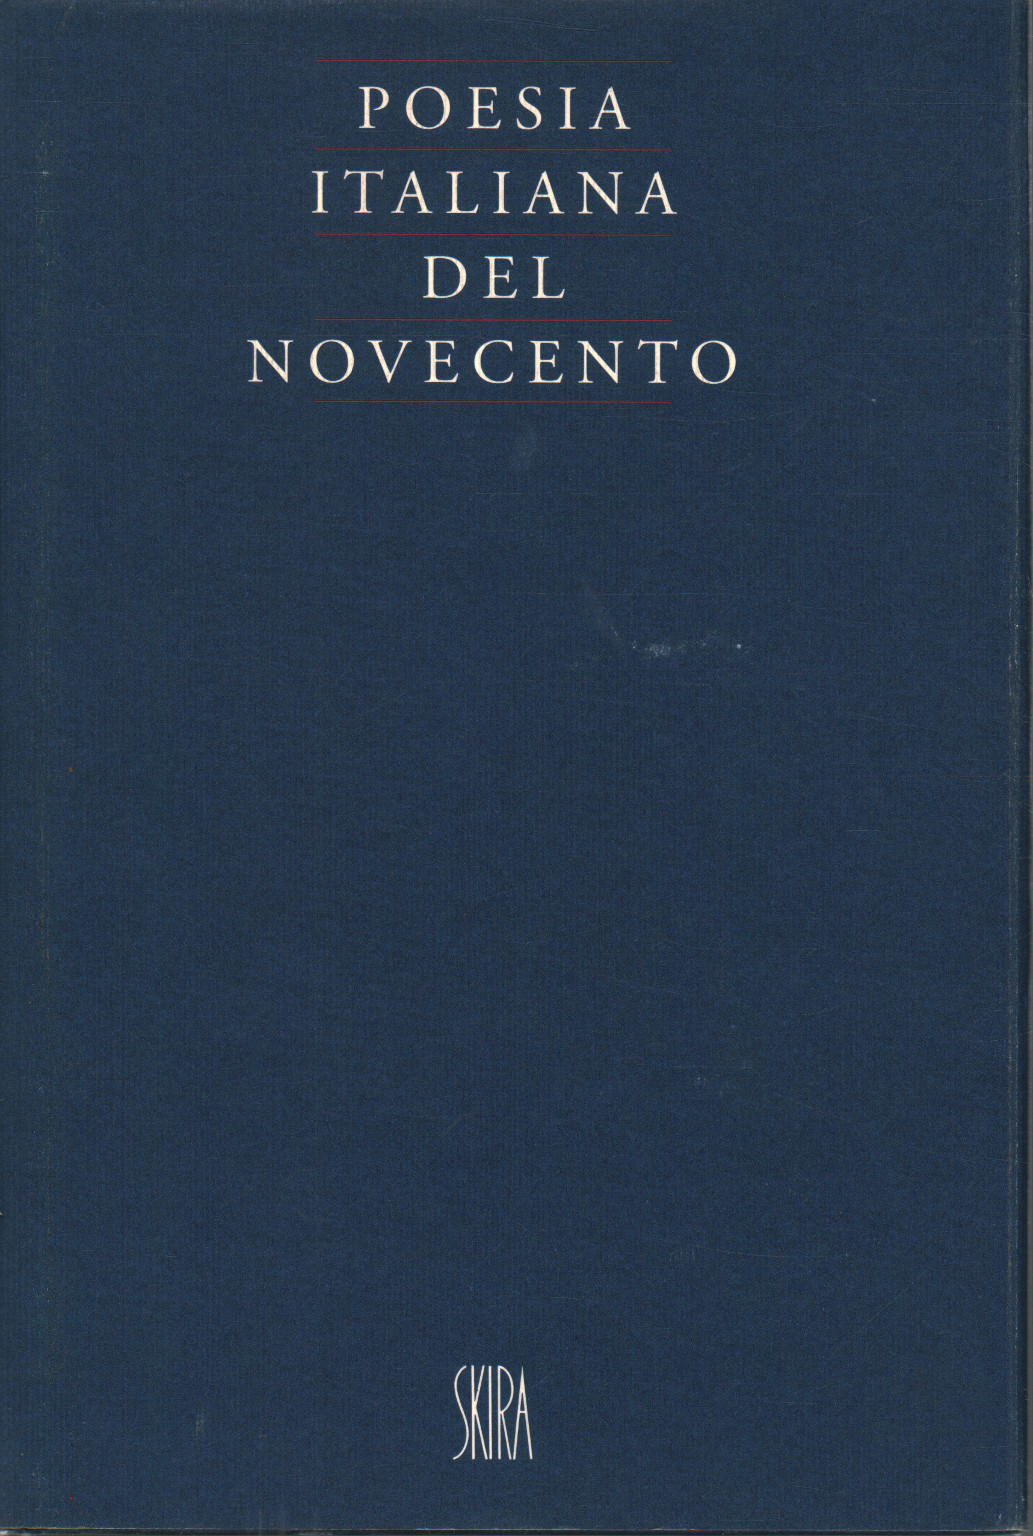 Italian poetry of the Twentieth century, s.a.